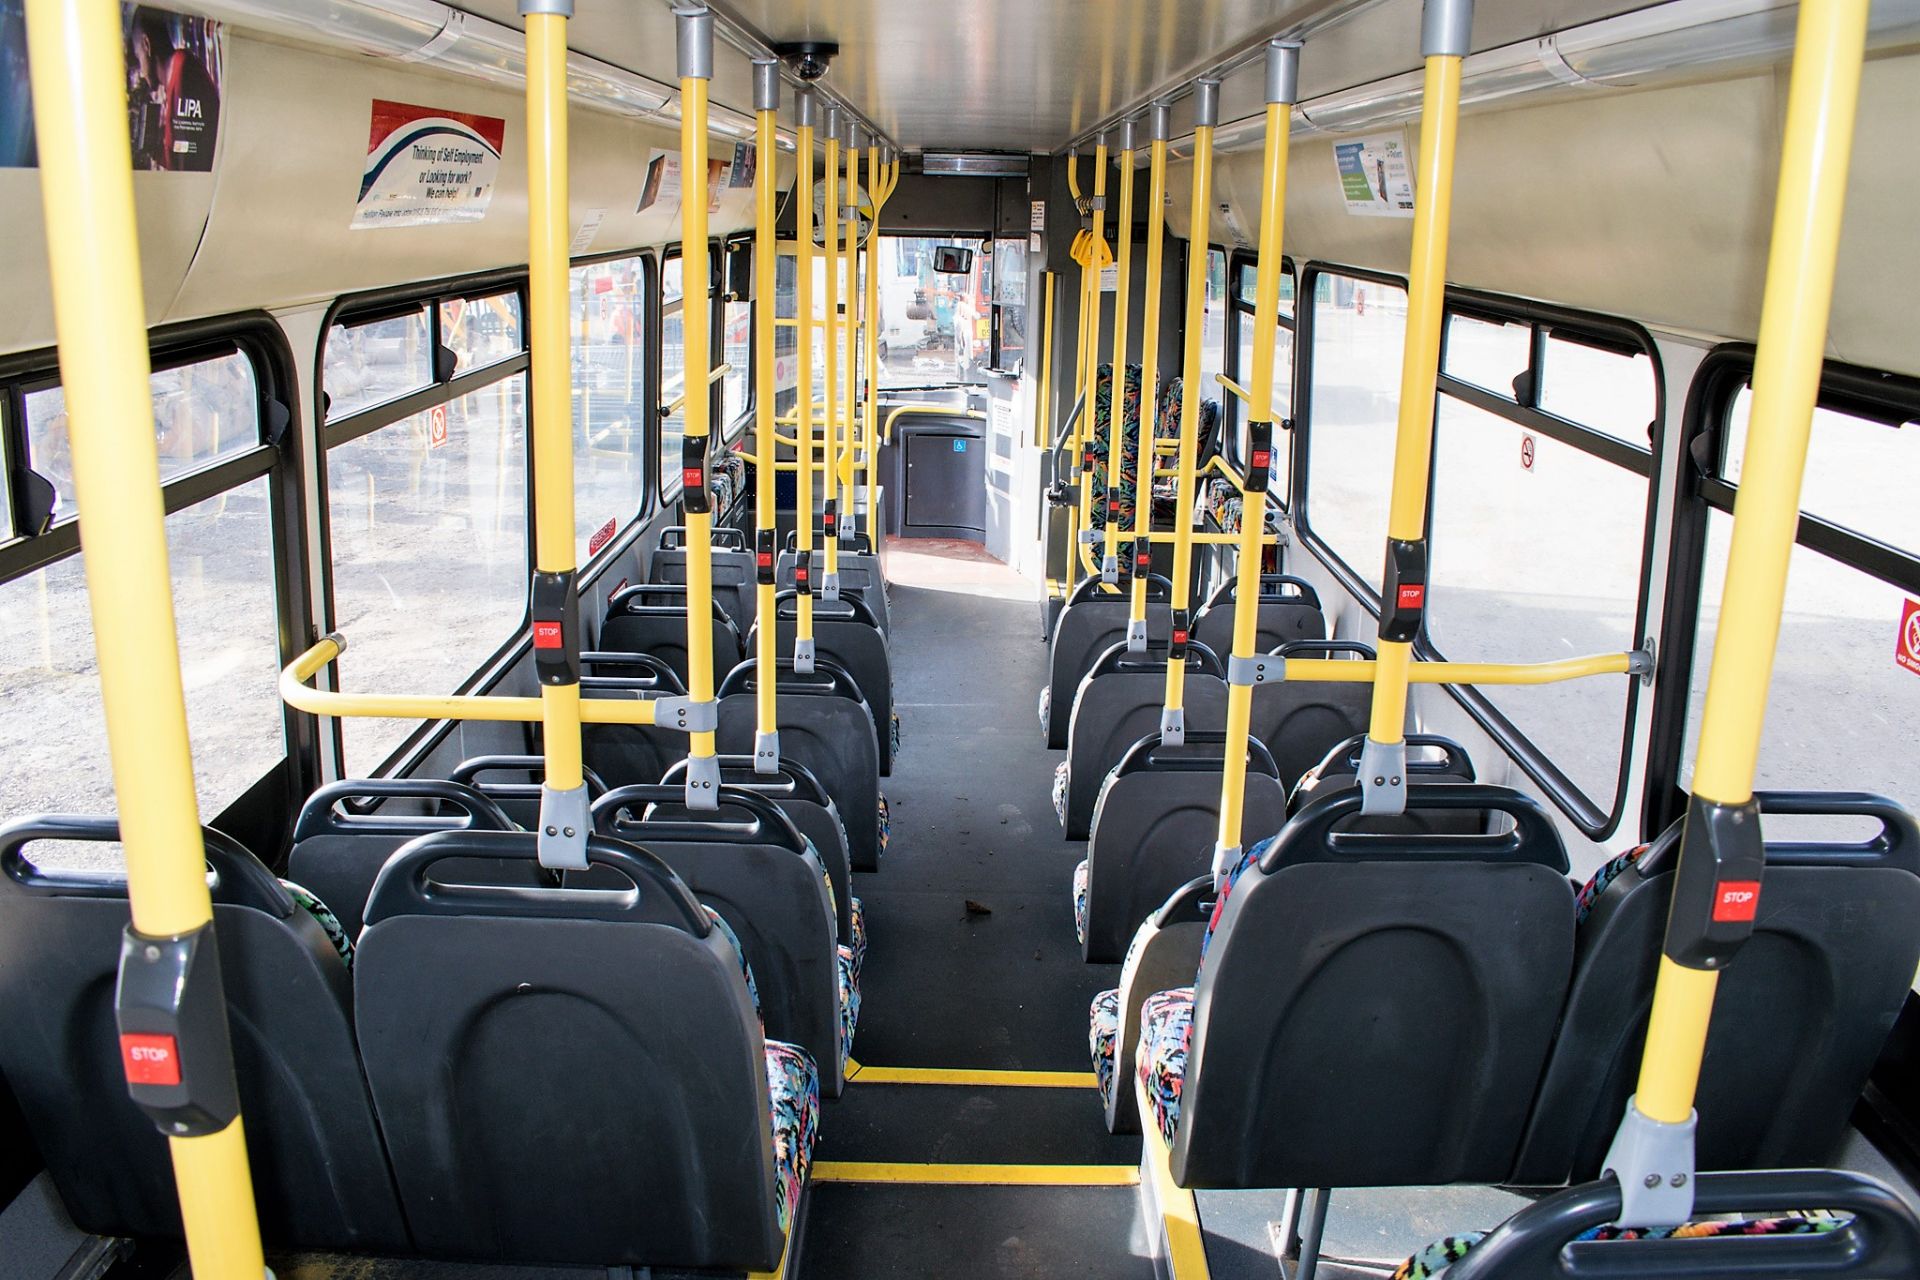 Dennis Super Dart 43 seat single deck service bus Registration Number: PN05 SYJ Date of - Image 12 of 14